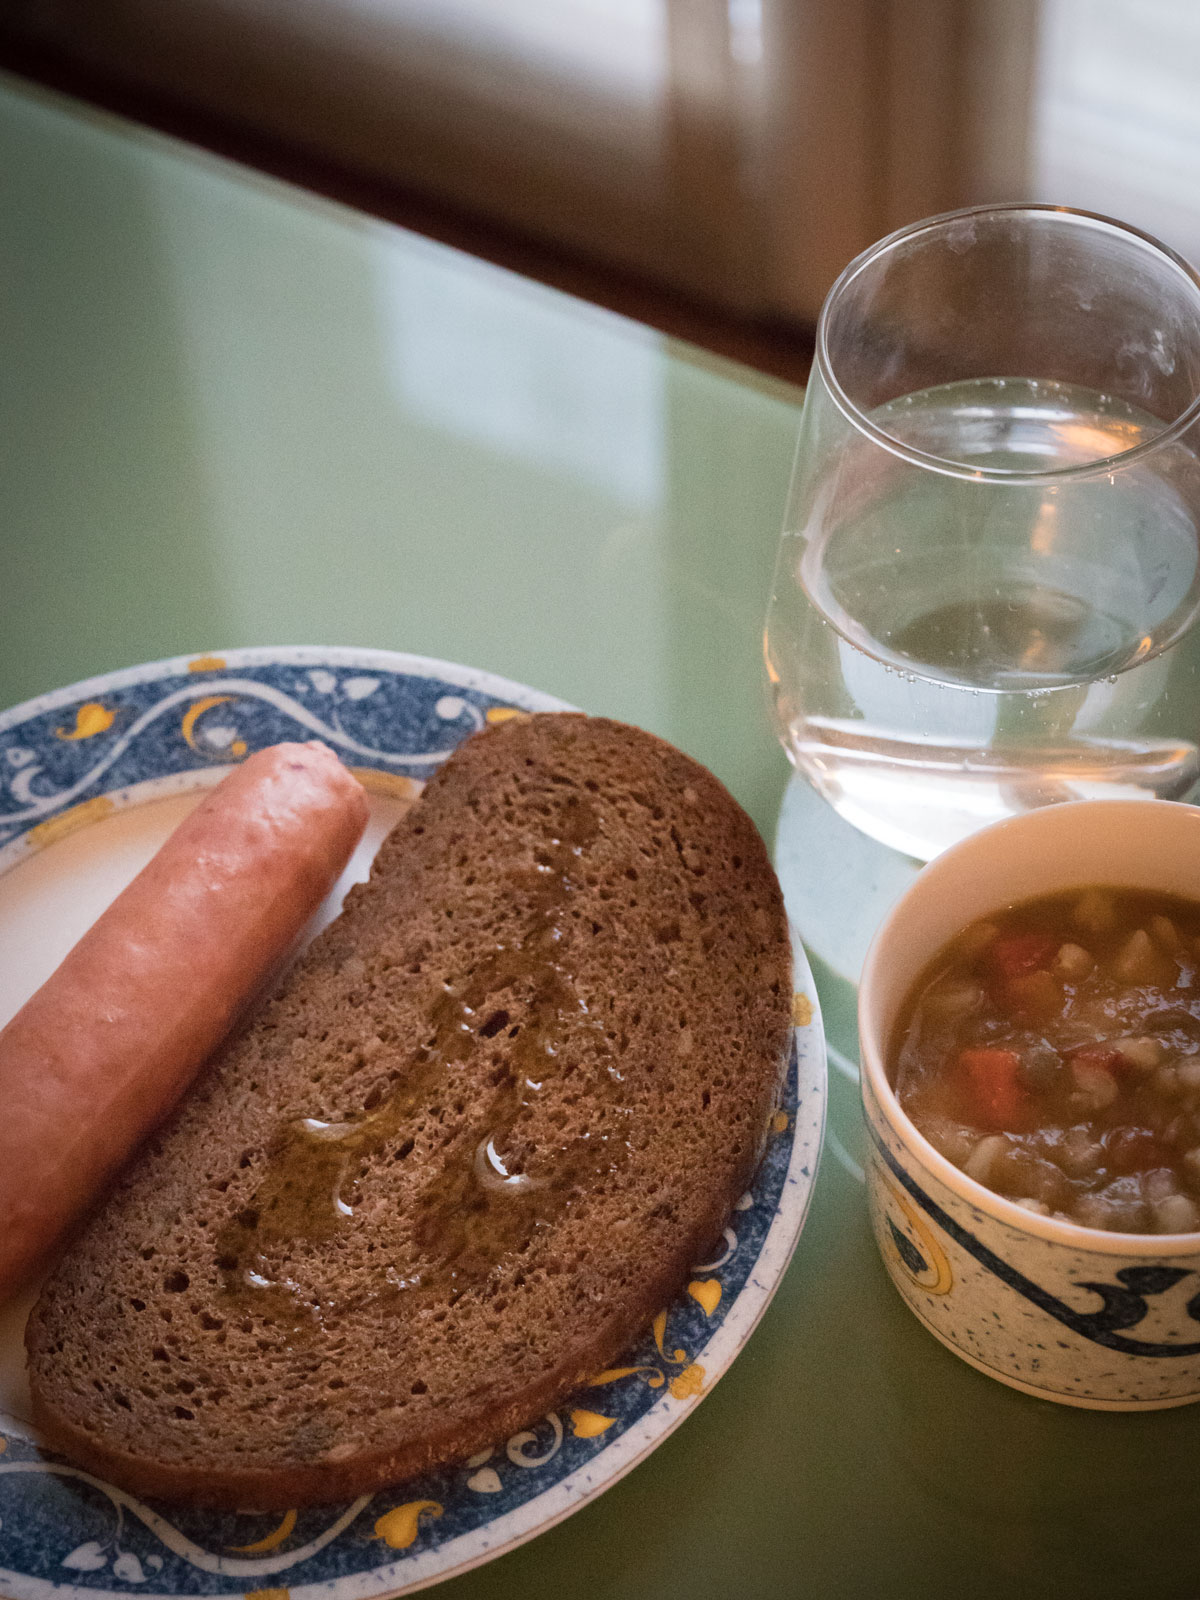 黒パンとソーセージ、ミネストローネ　超簡単な朝食朝食 DMC-GX8 + LEICA DG 